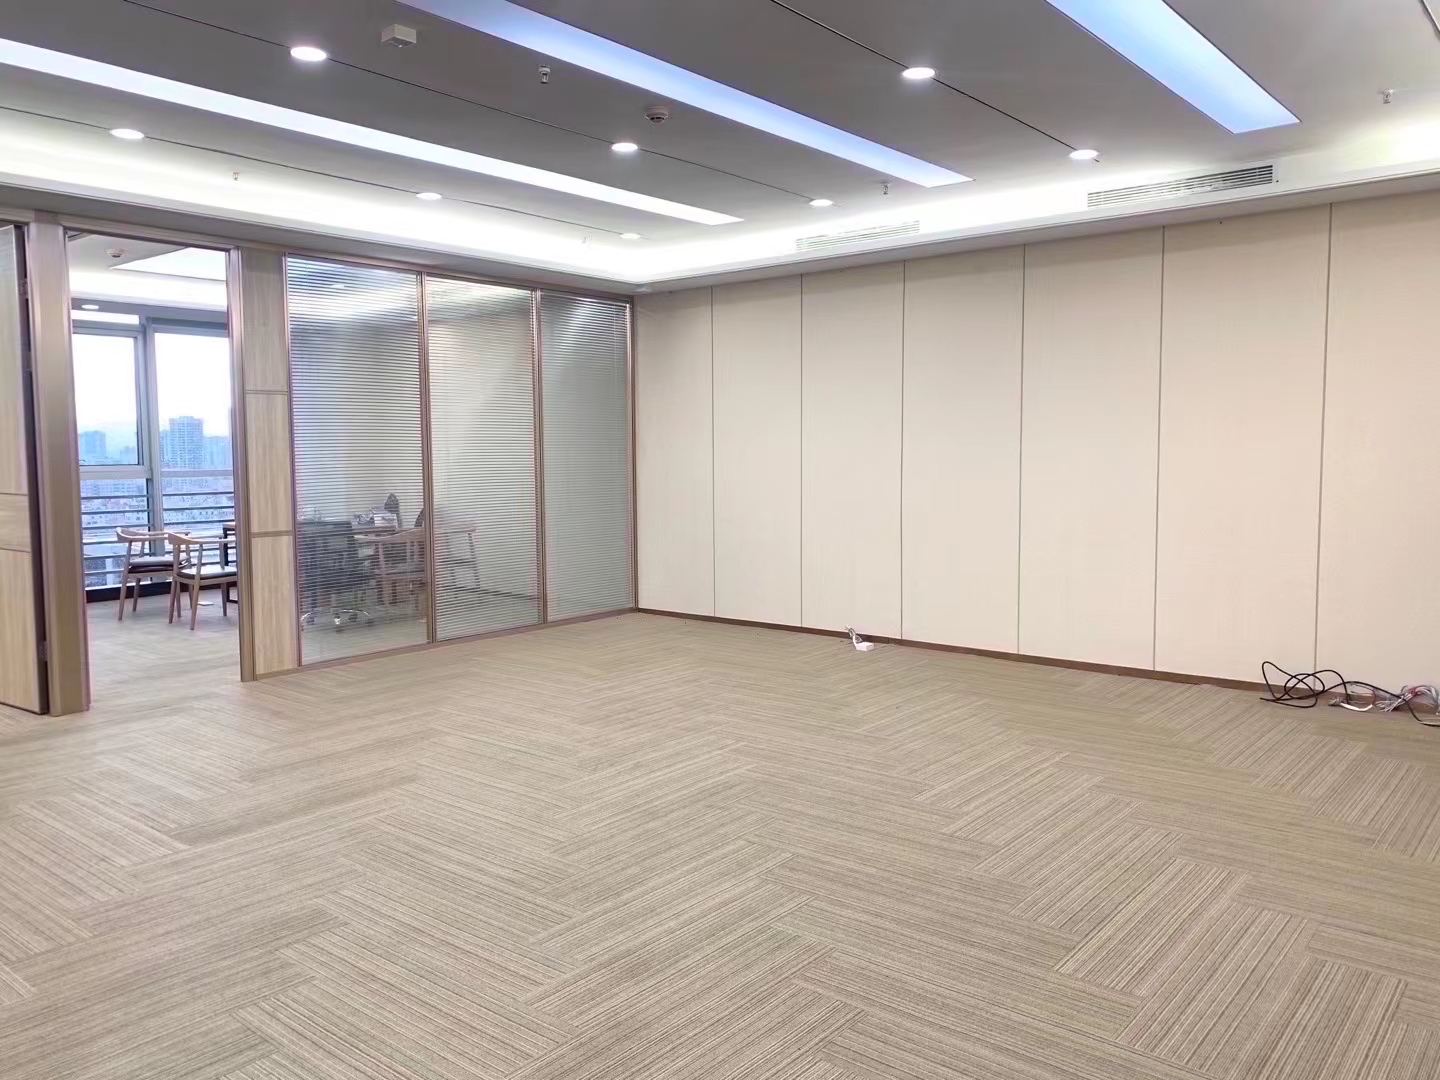 福田现代国际大厦235平精装修写字楼办公室出租